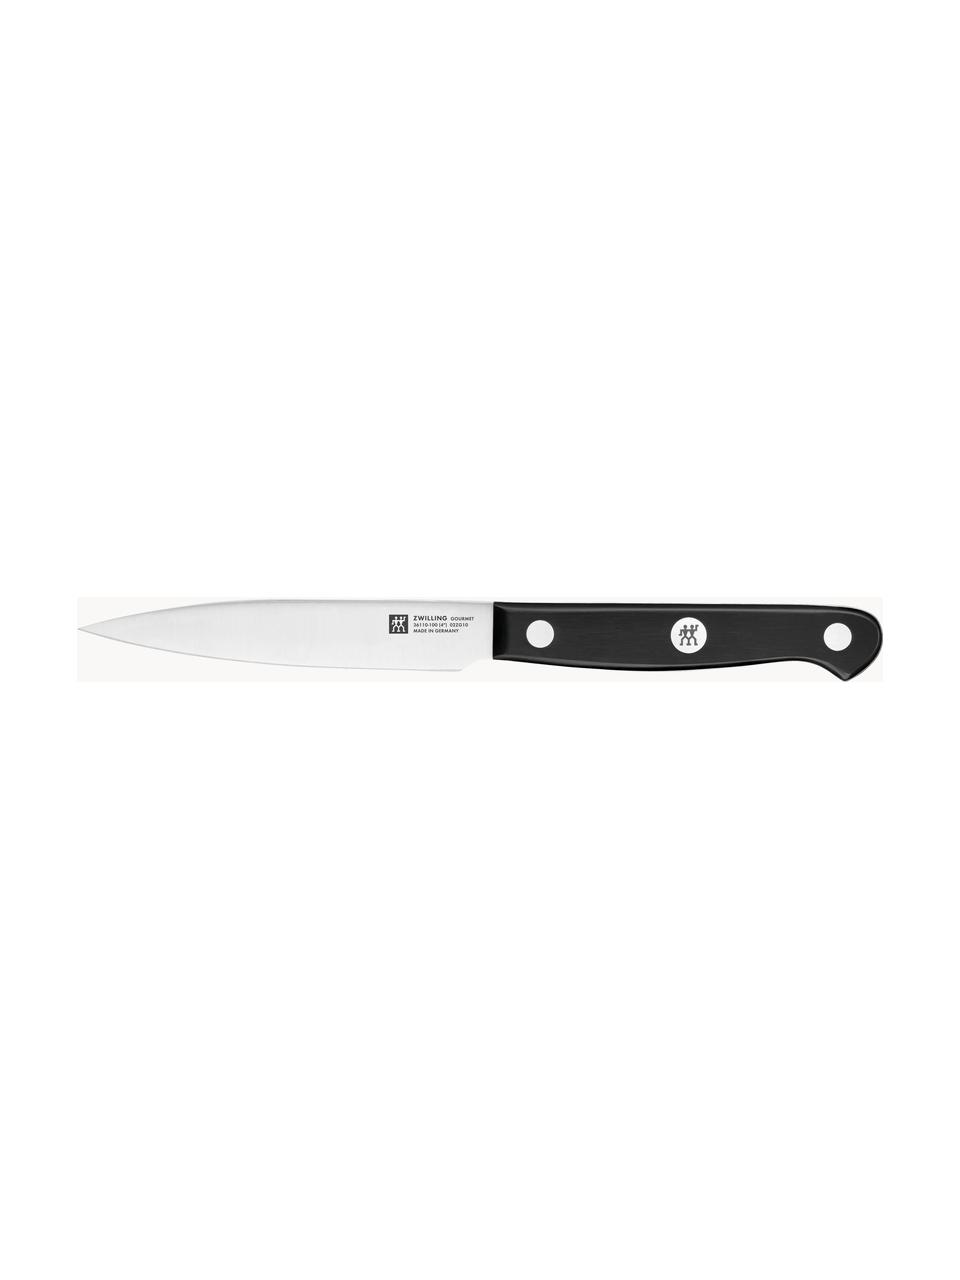 Selbstschärfender Messerblock Gourmet mit 5 Messern und 1 Schere, Messer: Edelstahl, Griff: Kunststoff, Braun, Schwarz, Set mit verschiedenen Größen